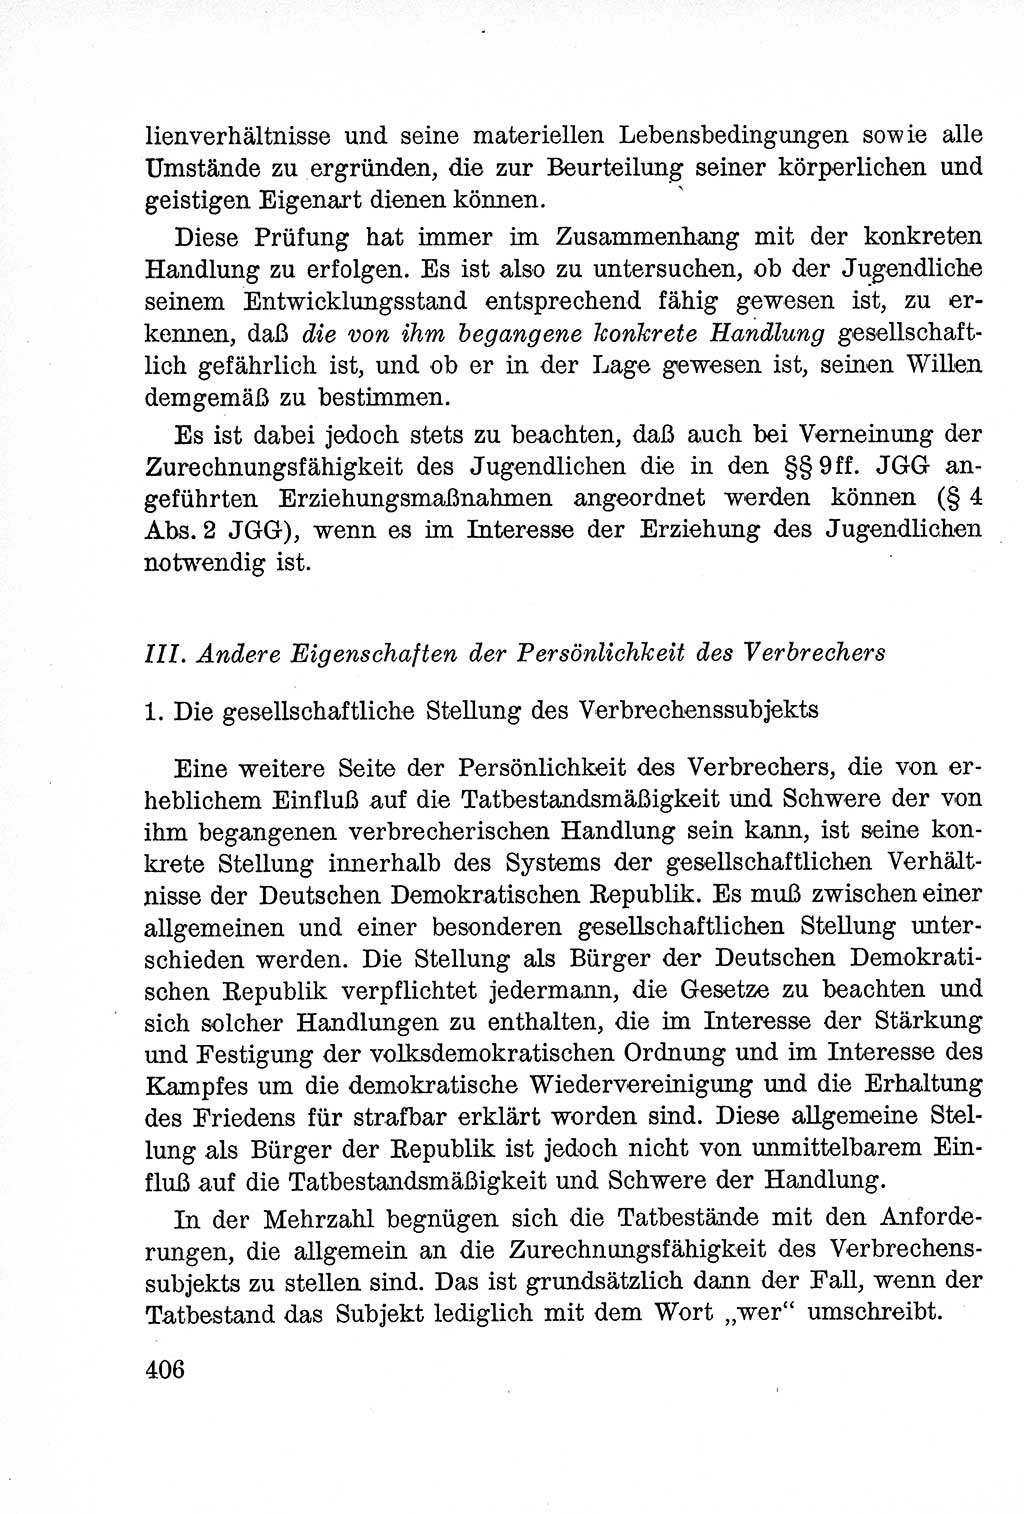 Lehrbuch des Strafrechts der Deutschen Demokratischen Republik (DDR), Allgemeiner Teil 1957, Seite 406 (Lb. Strafr. DDR AT 1957, S. 406)